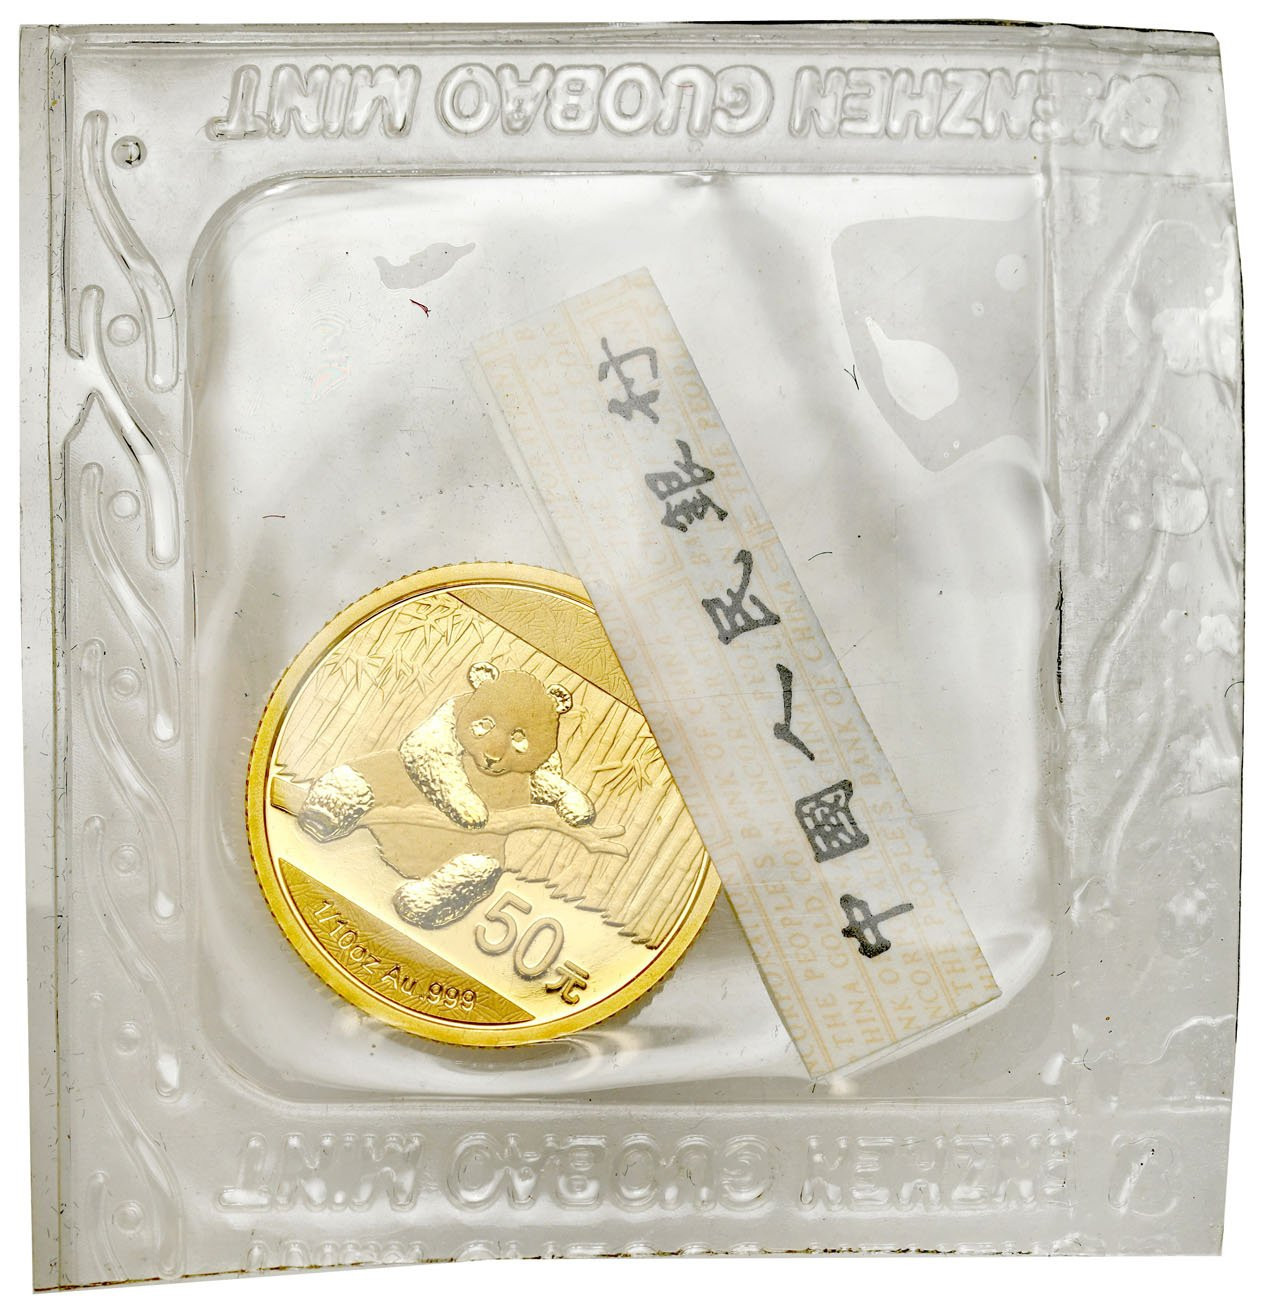 Chiny 50 yuan 2014 Panda - 1/10 uncji złota